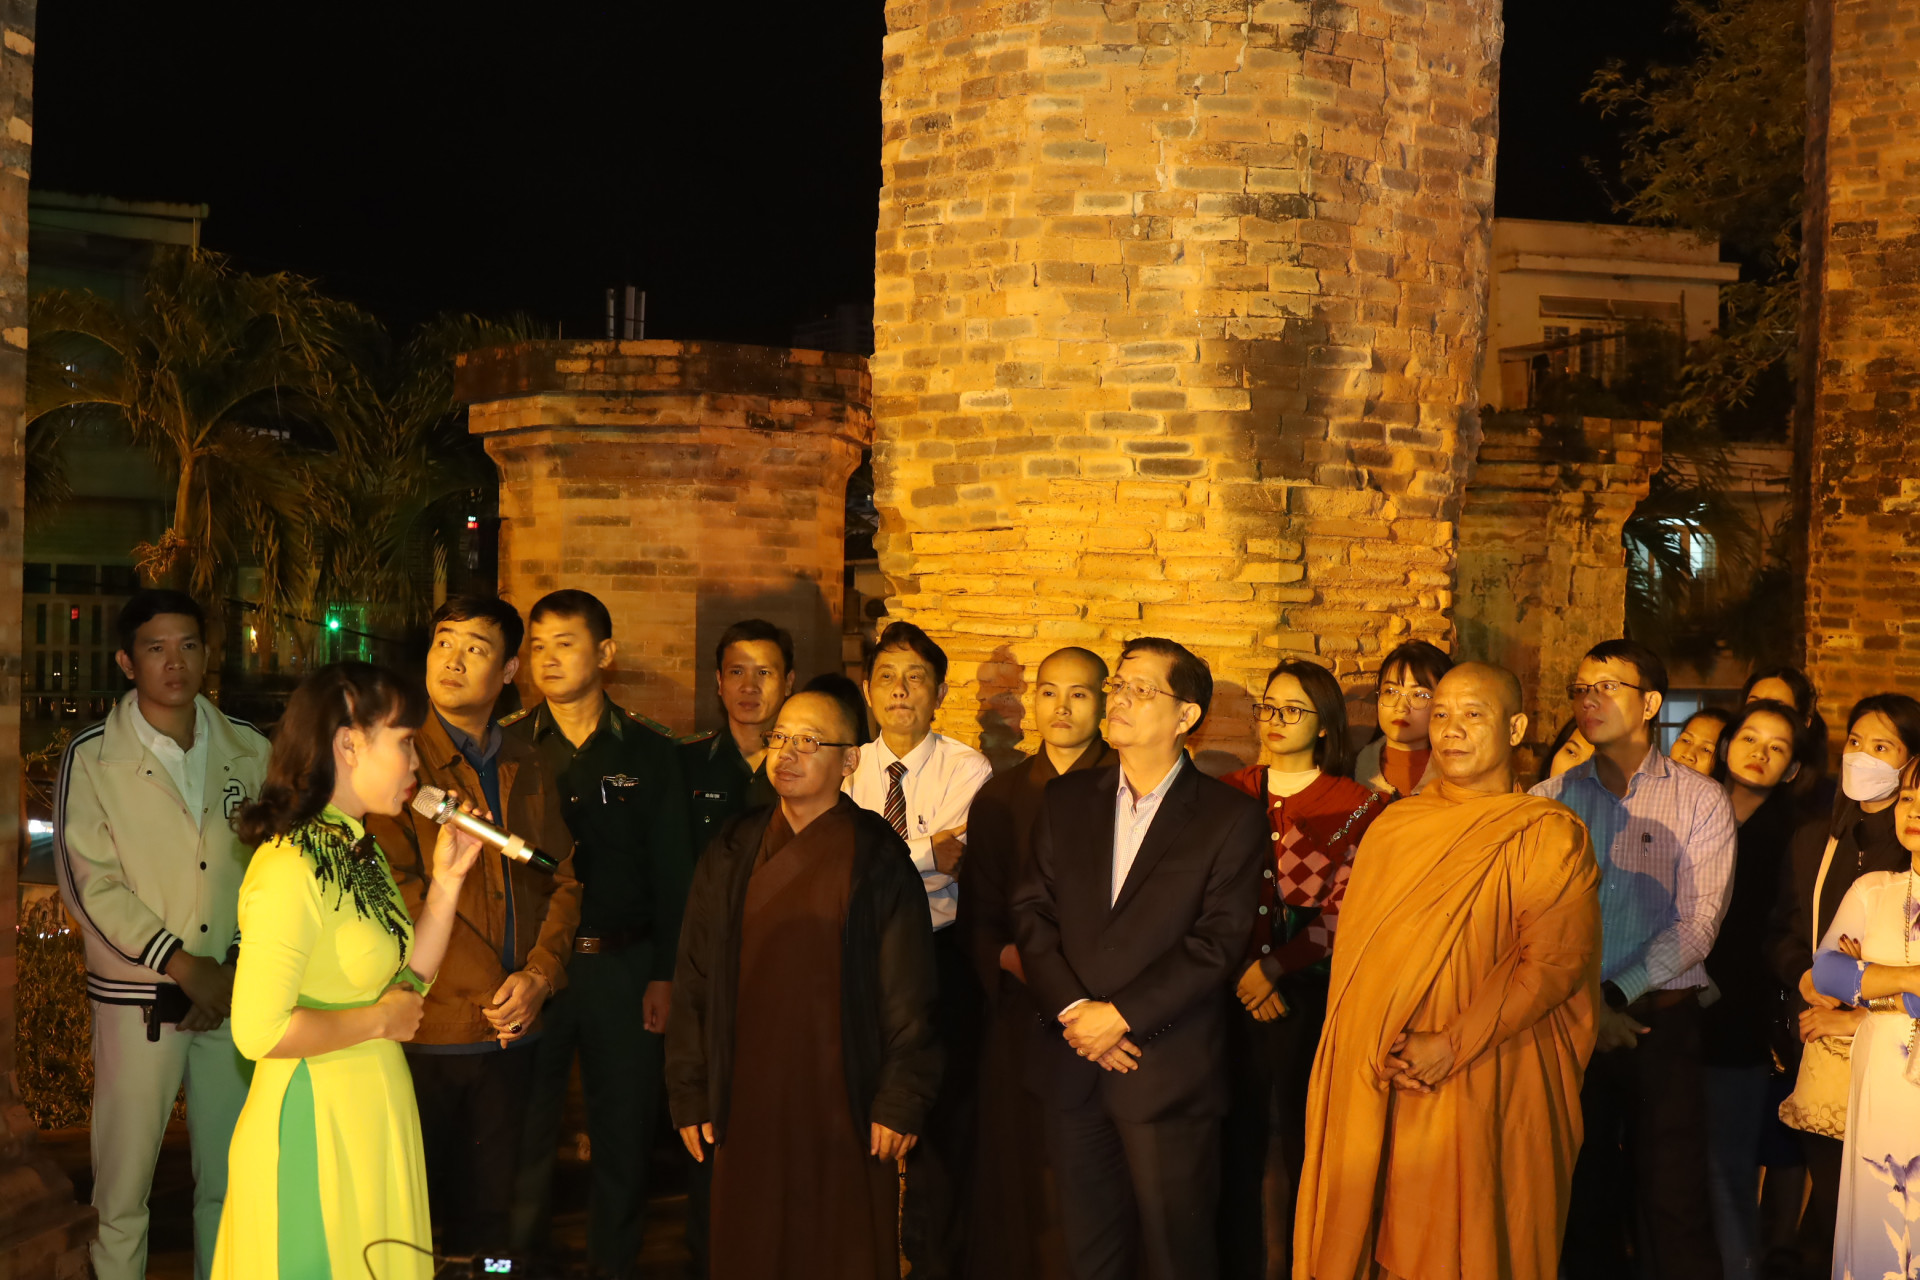 Ông Nguyễn Tấn Tuân và các đại biểu nghe thuyết minh về di tích Tháp Bà Ponagar.